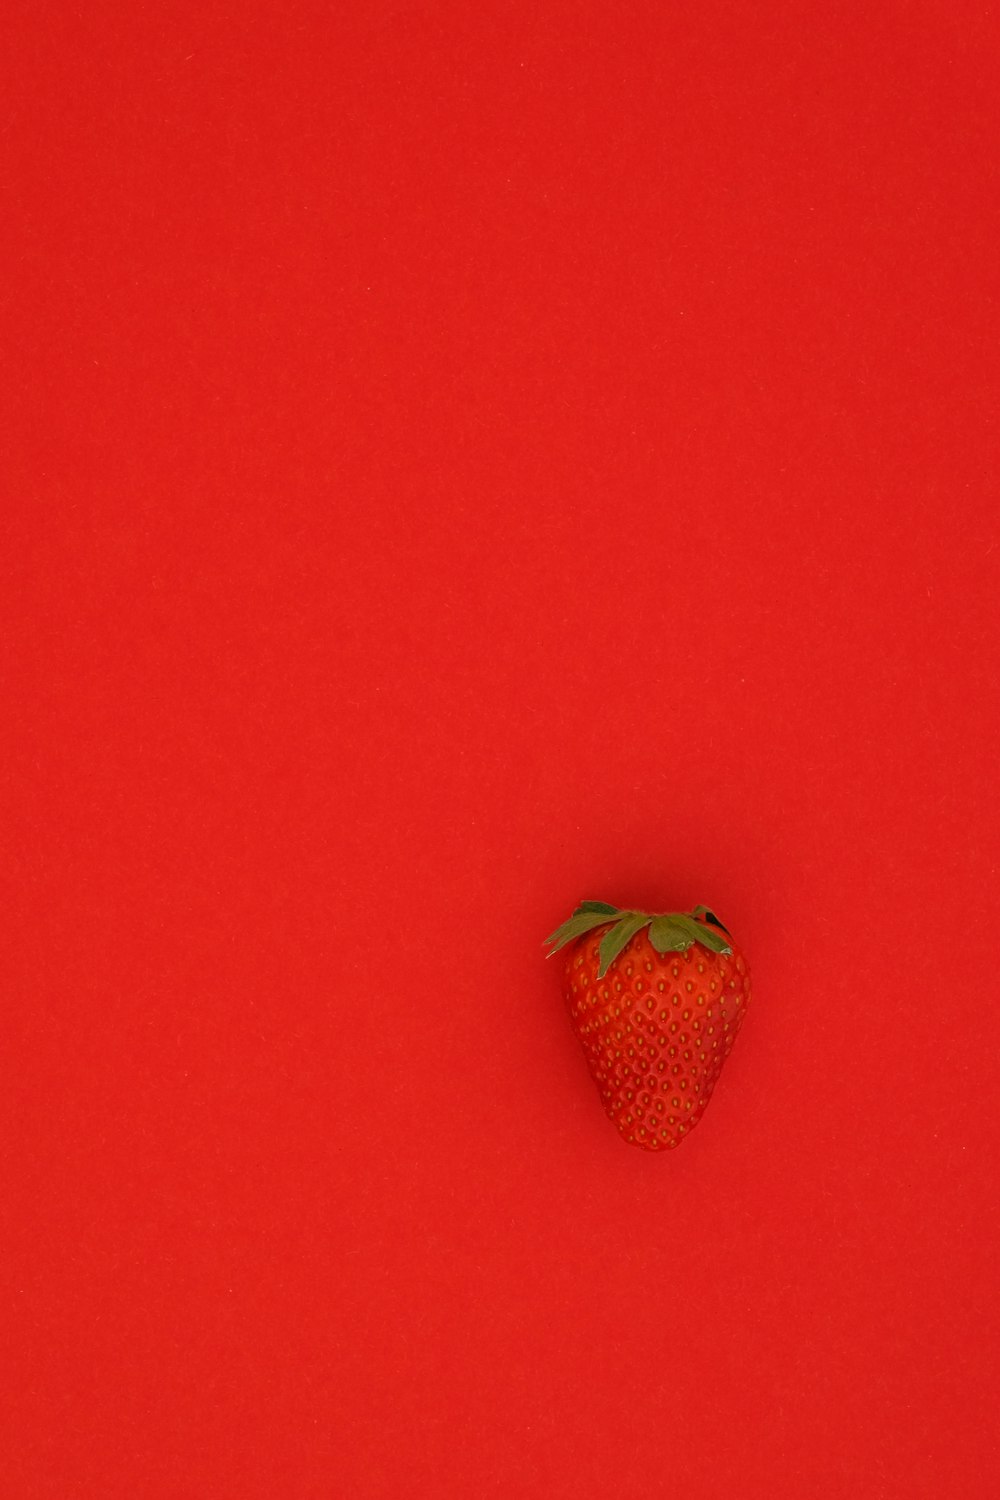 fruta de fresa roja sobre superficie roja